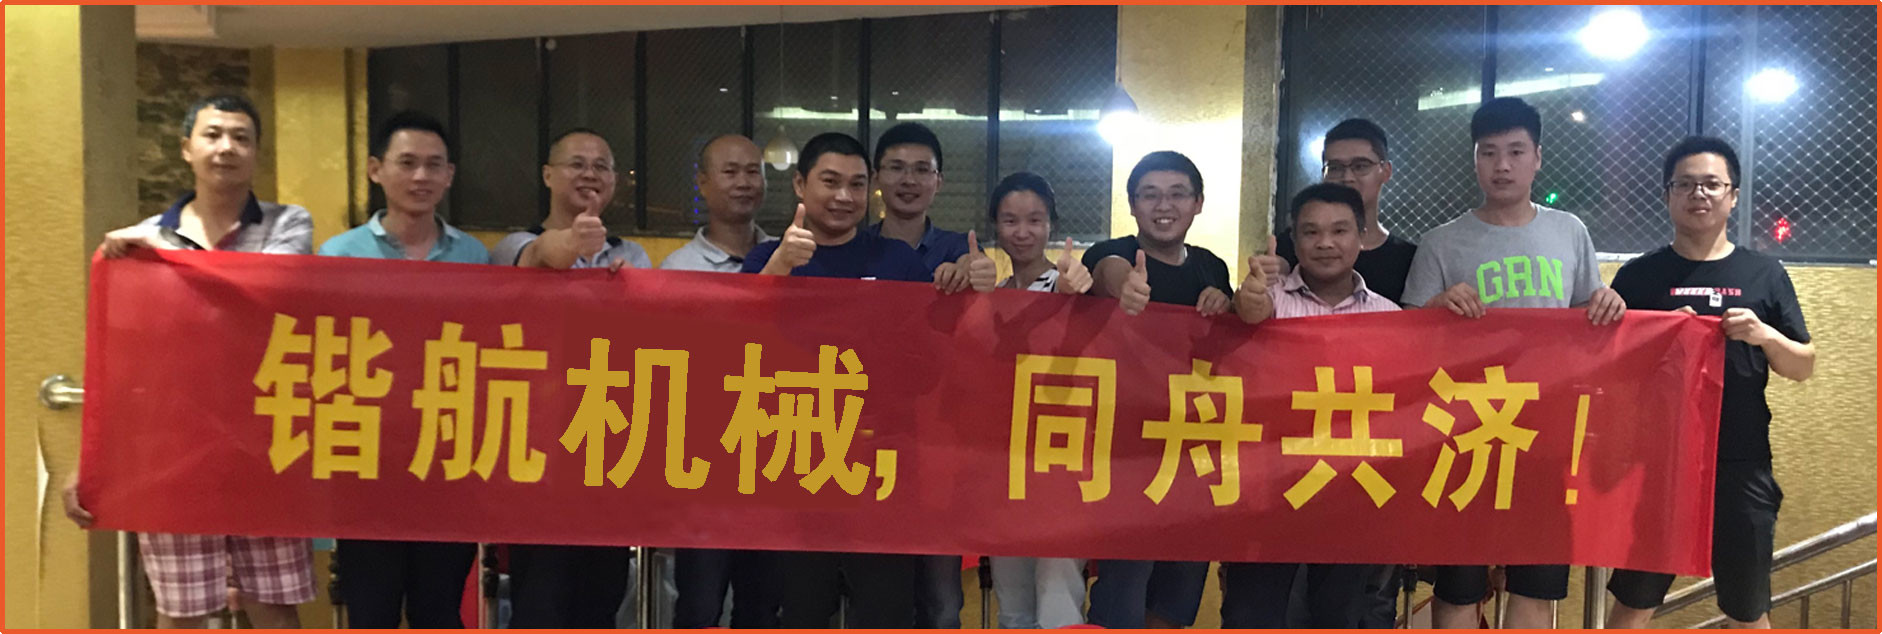 Xiamen New KaiHang Machinery Co., Ltd